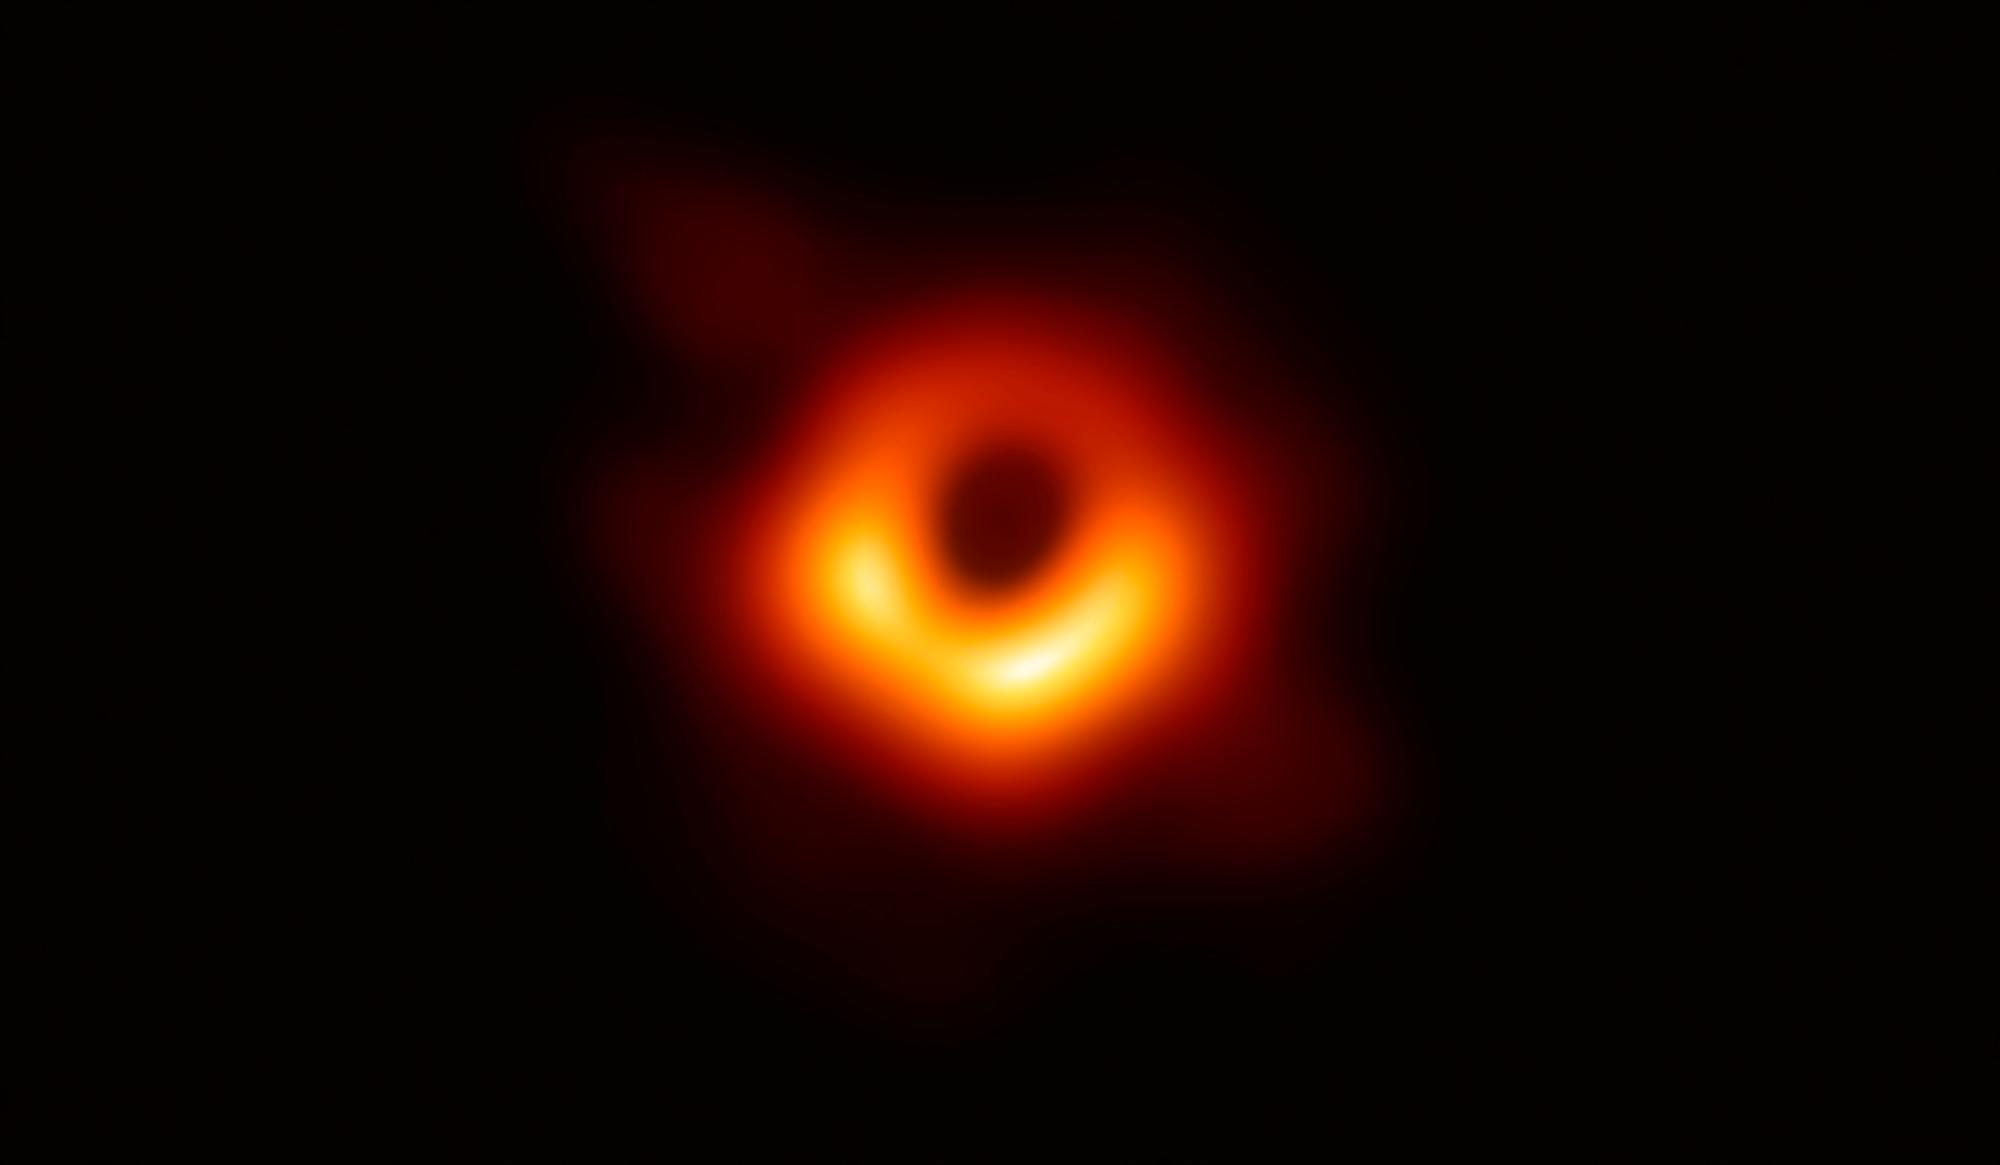 Primera imagen de un agujero negro, tomada por el telescopio Event Horizon Telescope (EHT) en abril de 2019 